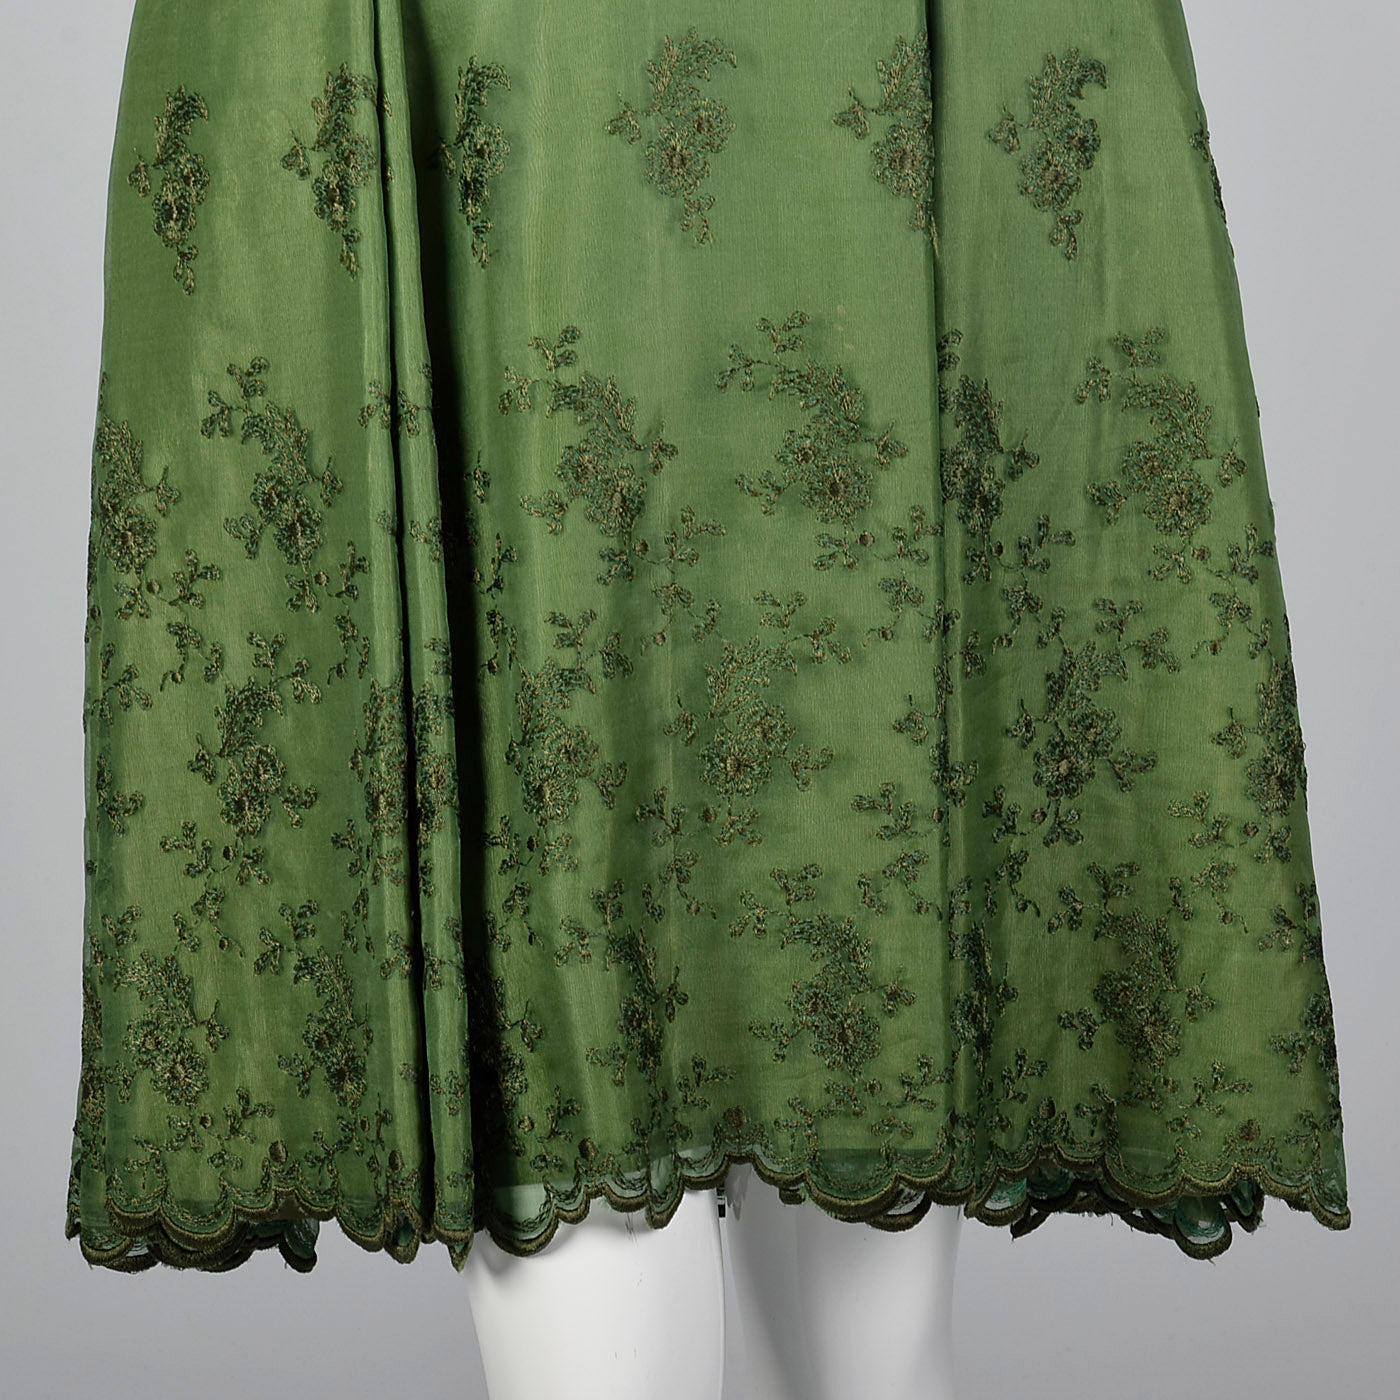 1960s Green Dress with Velvet Bodice